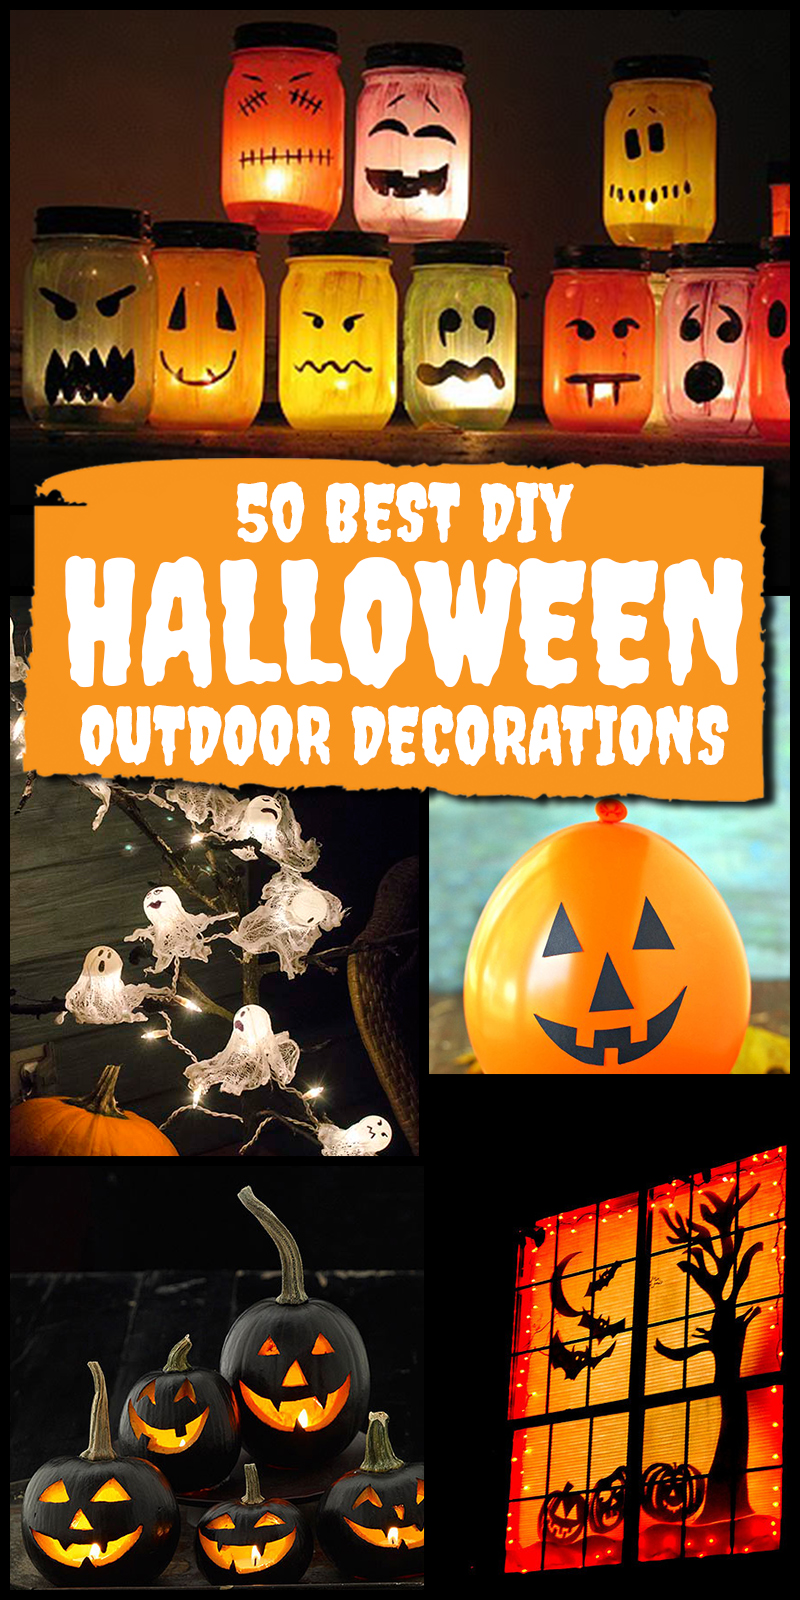 50 Best Diy Halloween Outdoor Decorations